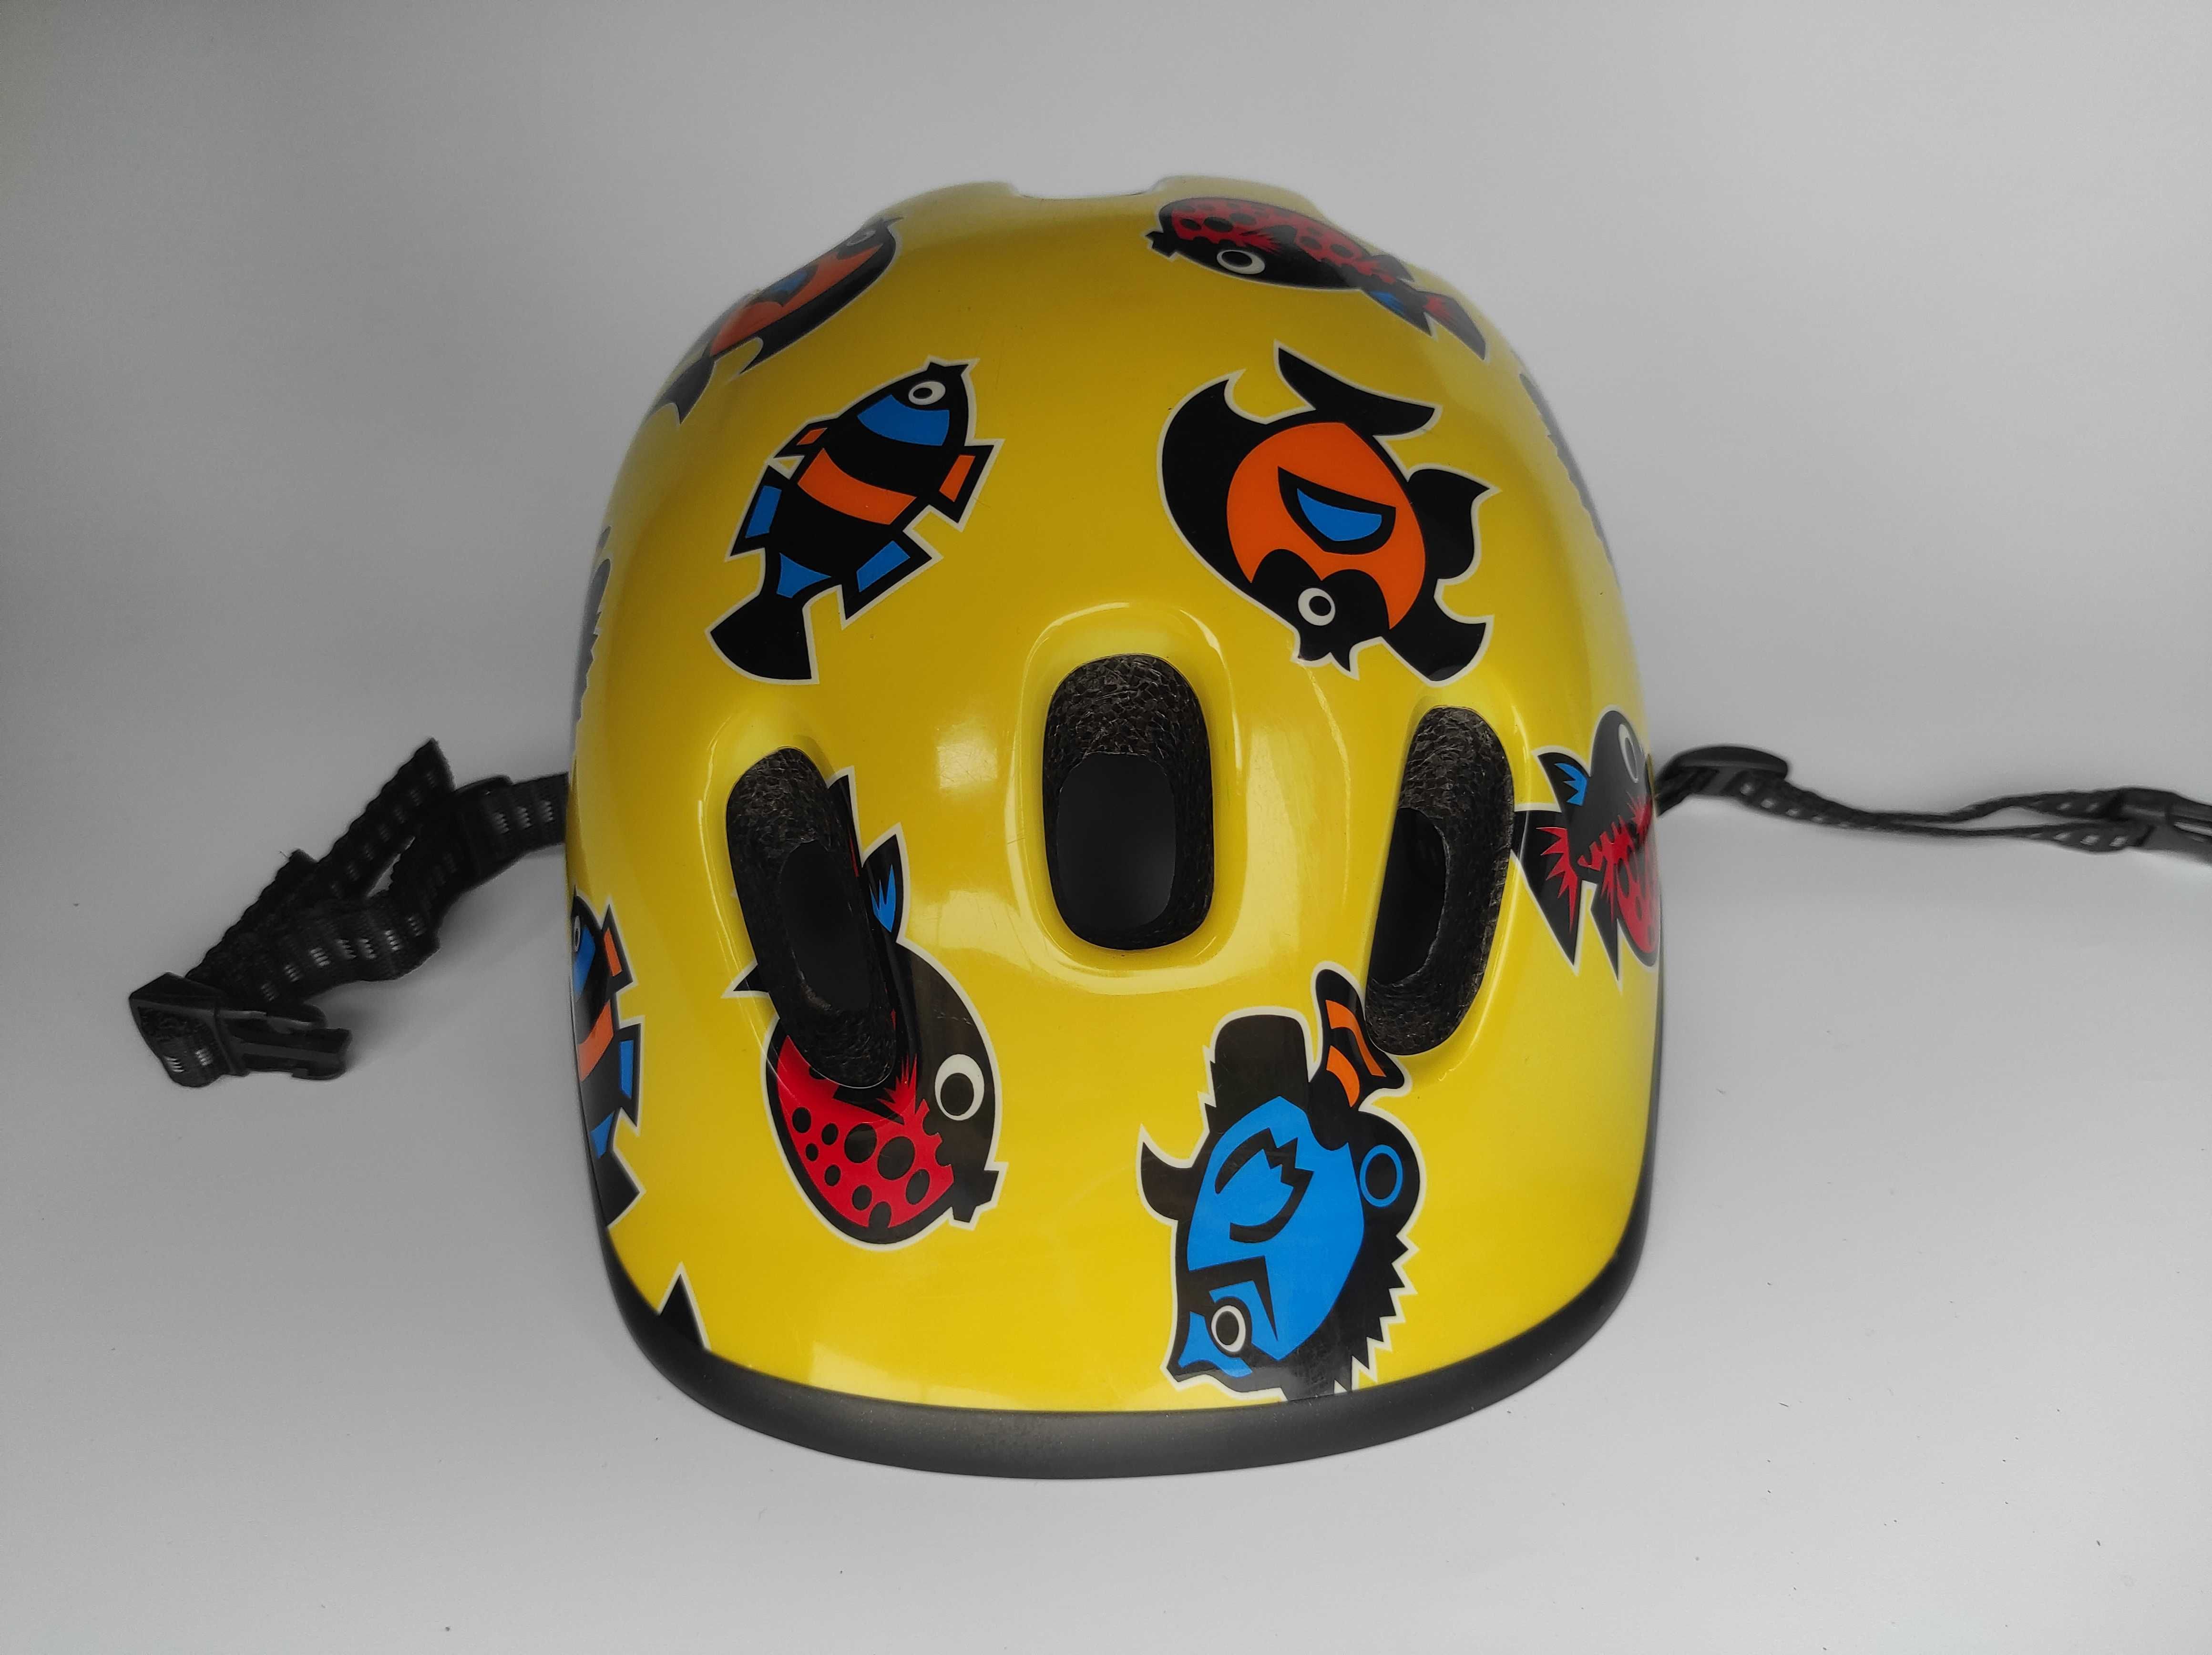 Детский защитный шлем, размер 52-56см, велосипедный, Германия.